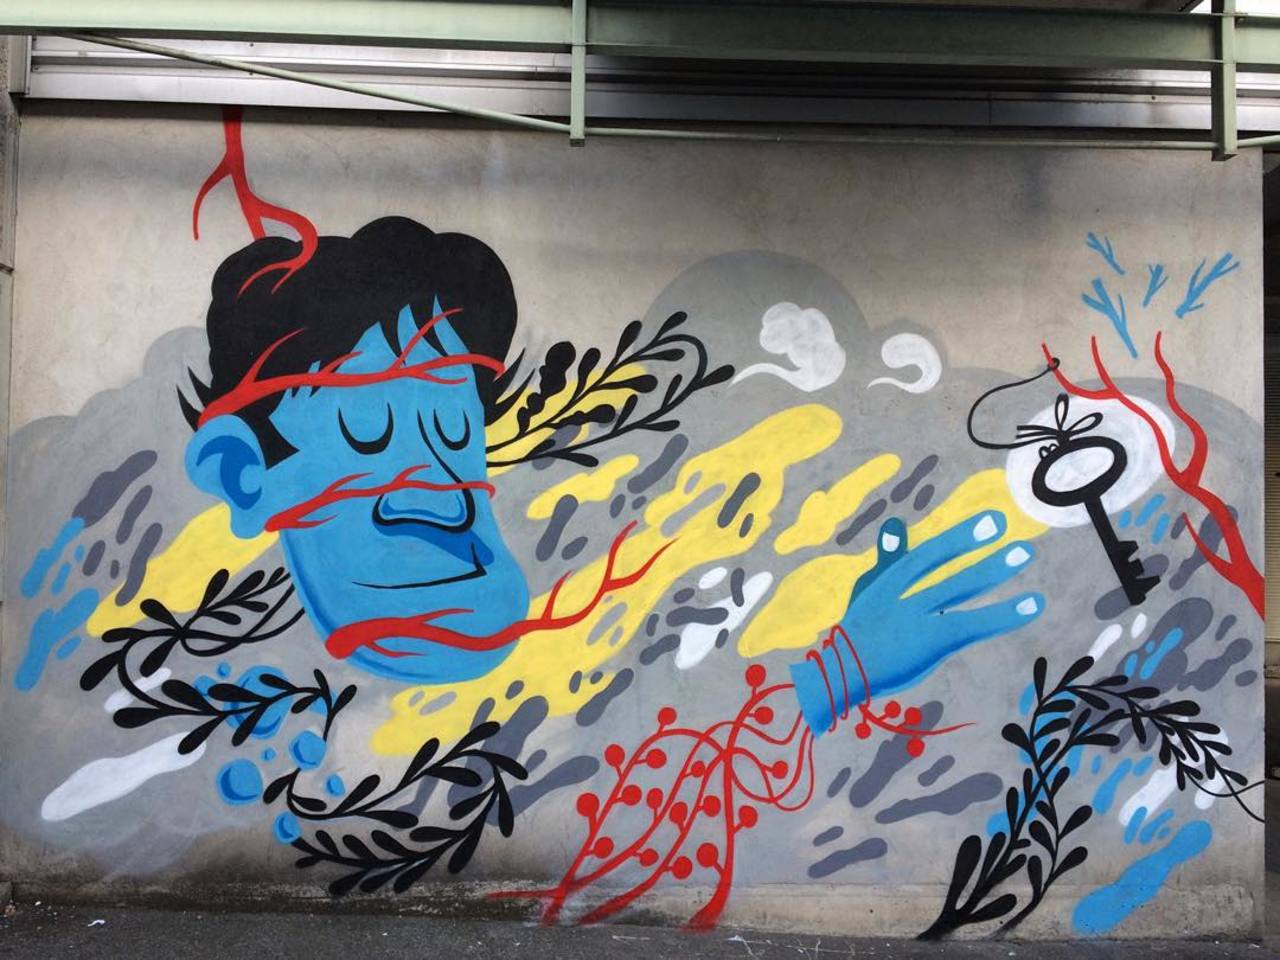 #Paris #graffiti photo by @elricoelmagnifico http://ift.tt/1RbU9RD #StreetArt http://t.co/wA5zR8IYx8